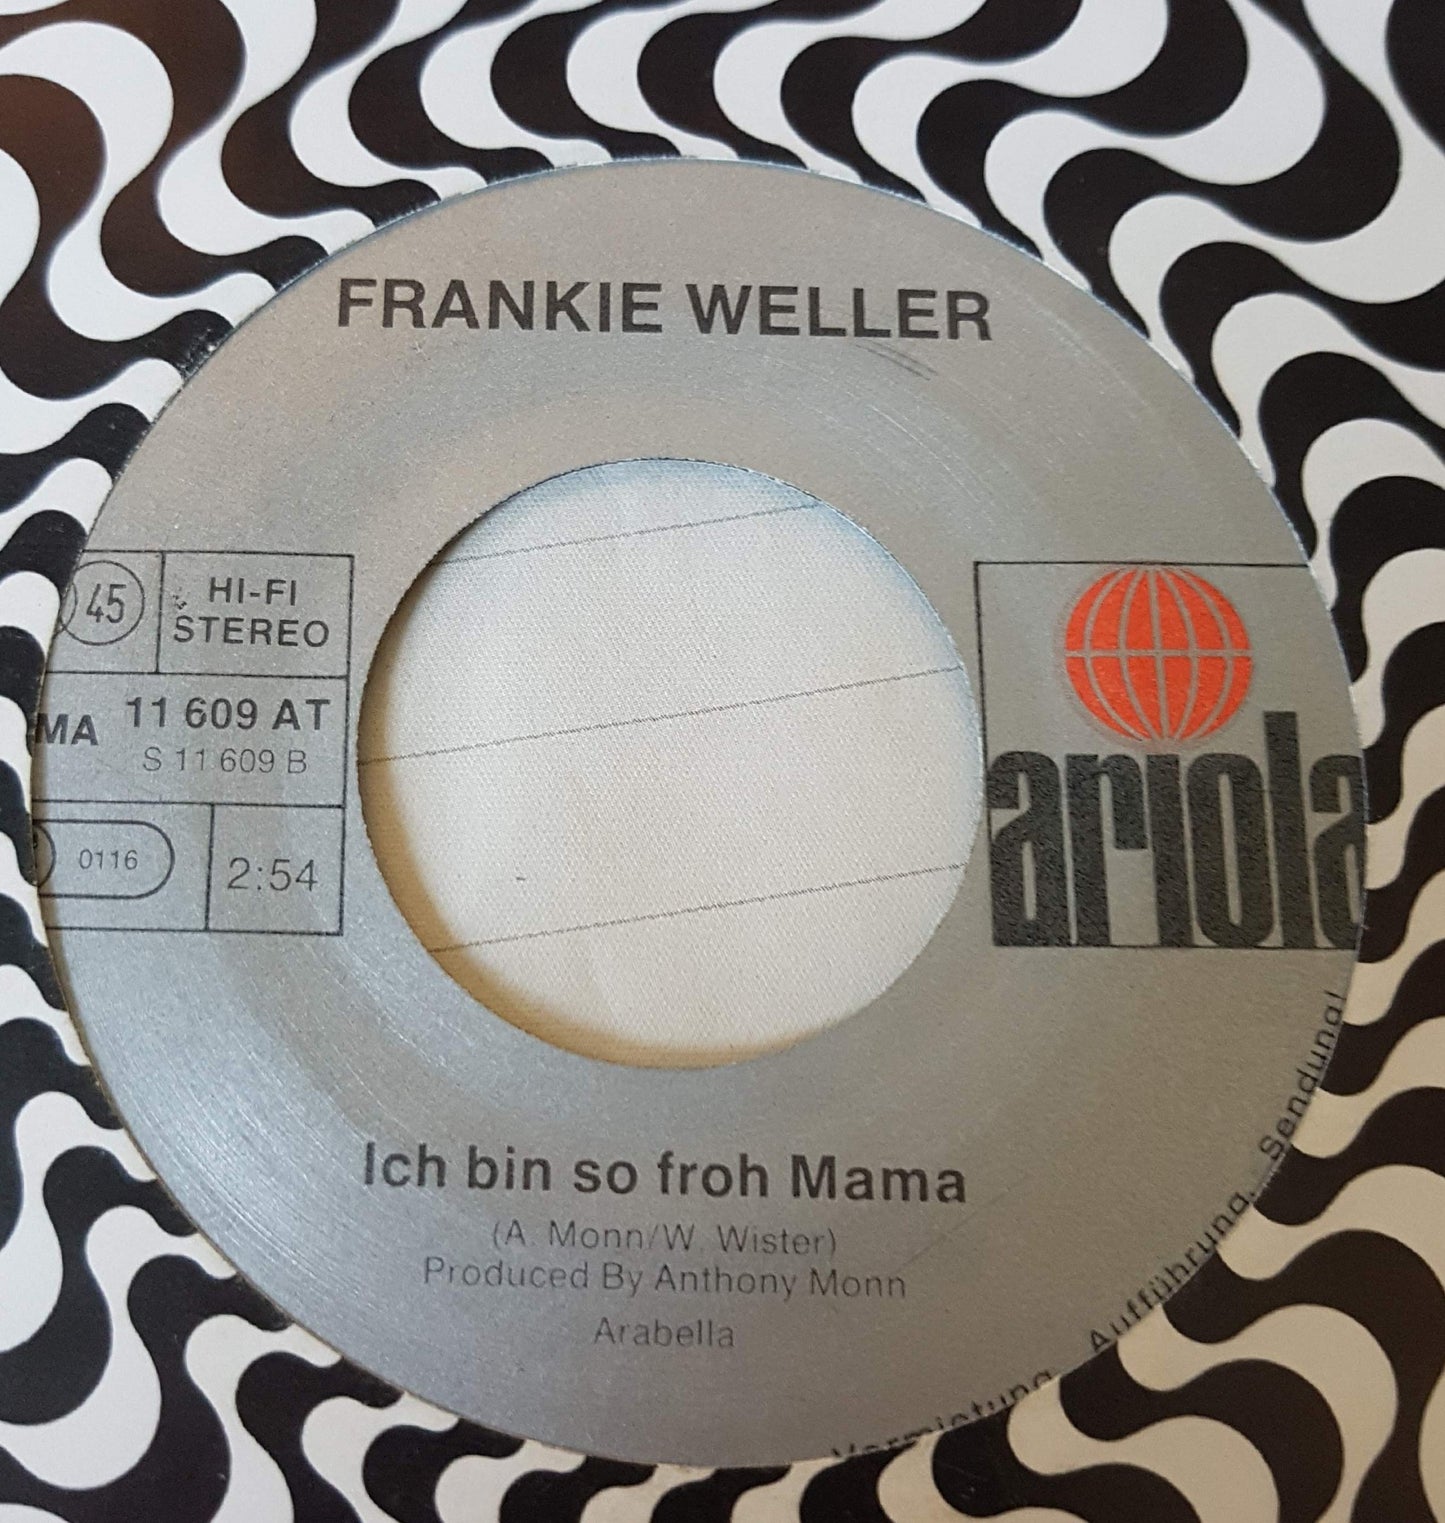 Frankie Weller - Jimmy Bulldog Vinyl Singles VINYLSINGLES.NL